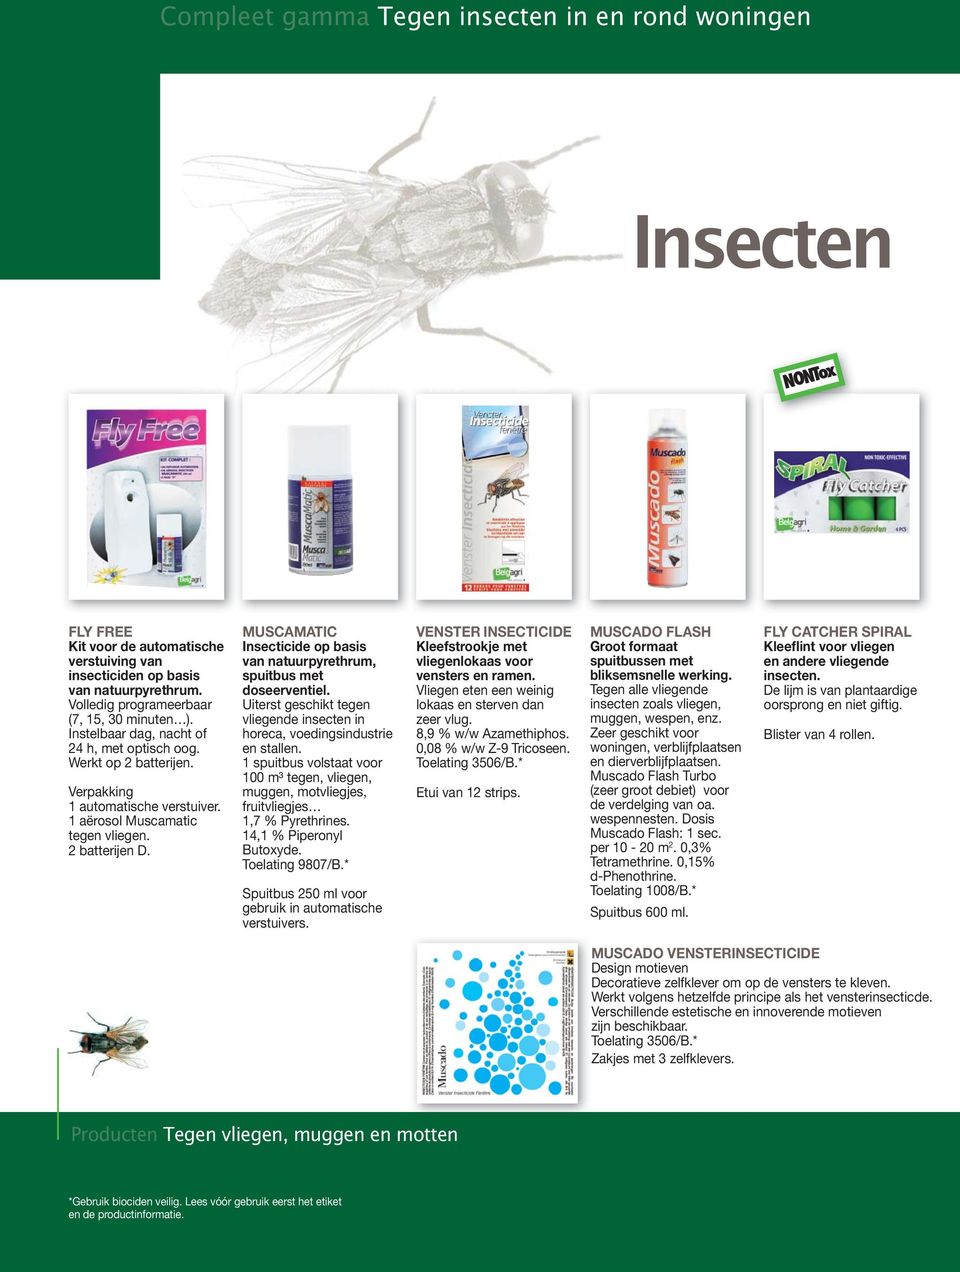 MUSCAMATIC Insecticide op basis van natuurpyrethrum, spuitbus met doseerventiel. Uiterst geschikt tegen vliegende insecten in horeca, voedingsindustrie en stallen.